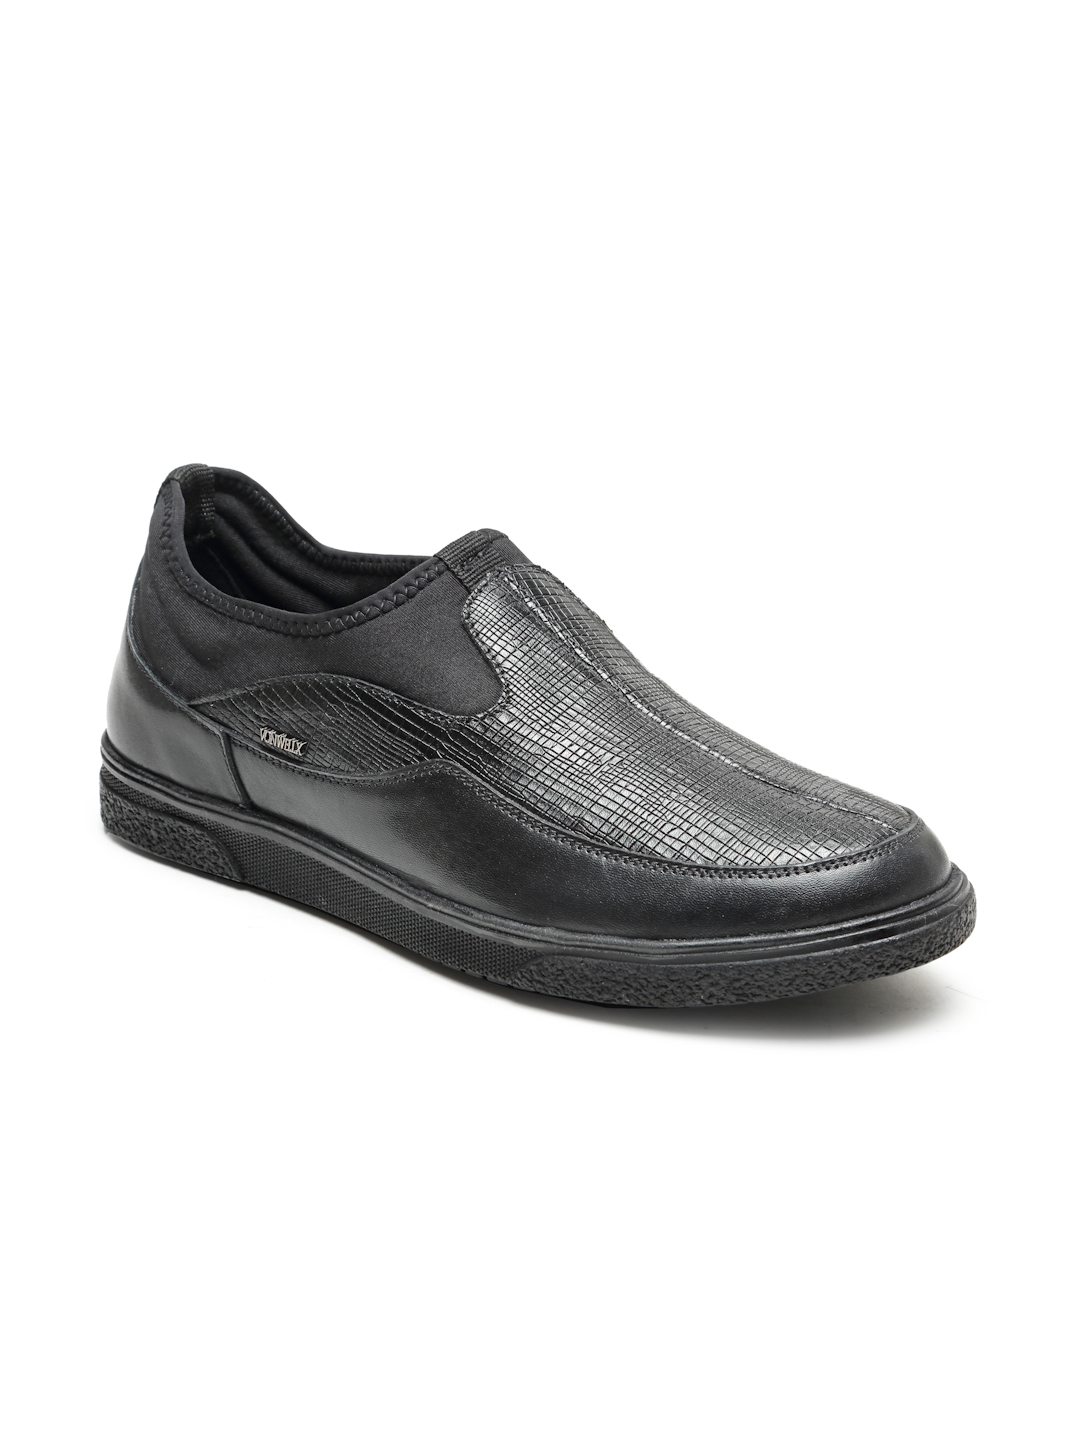 Buy Von Wellx Germany Comfort Men's Black Casual Loafers Everett Online in Coimbatore